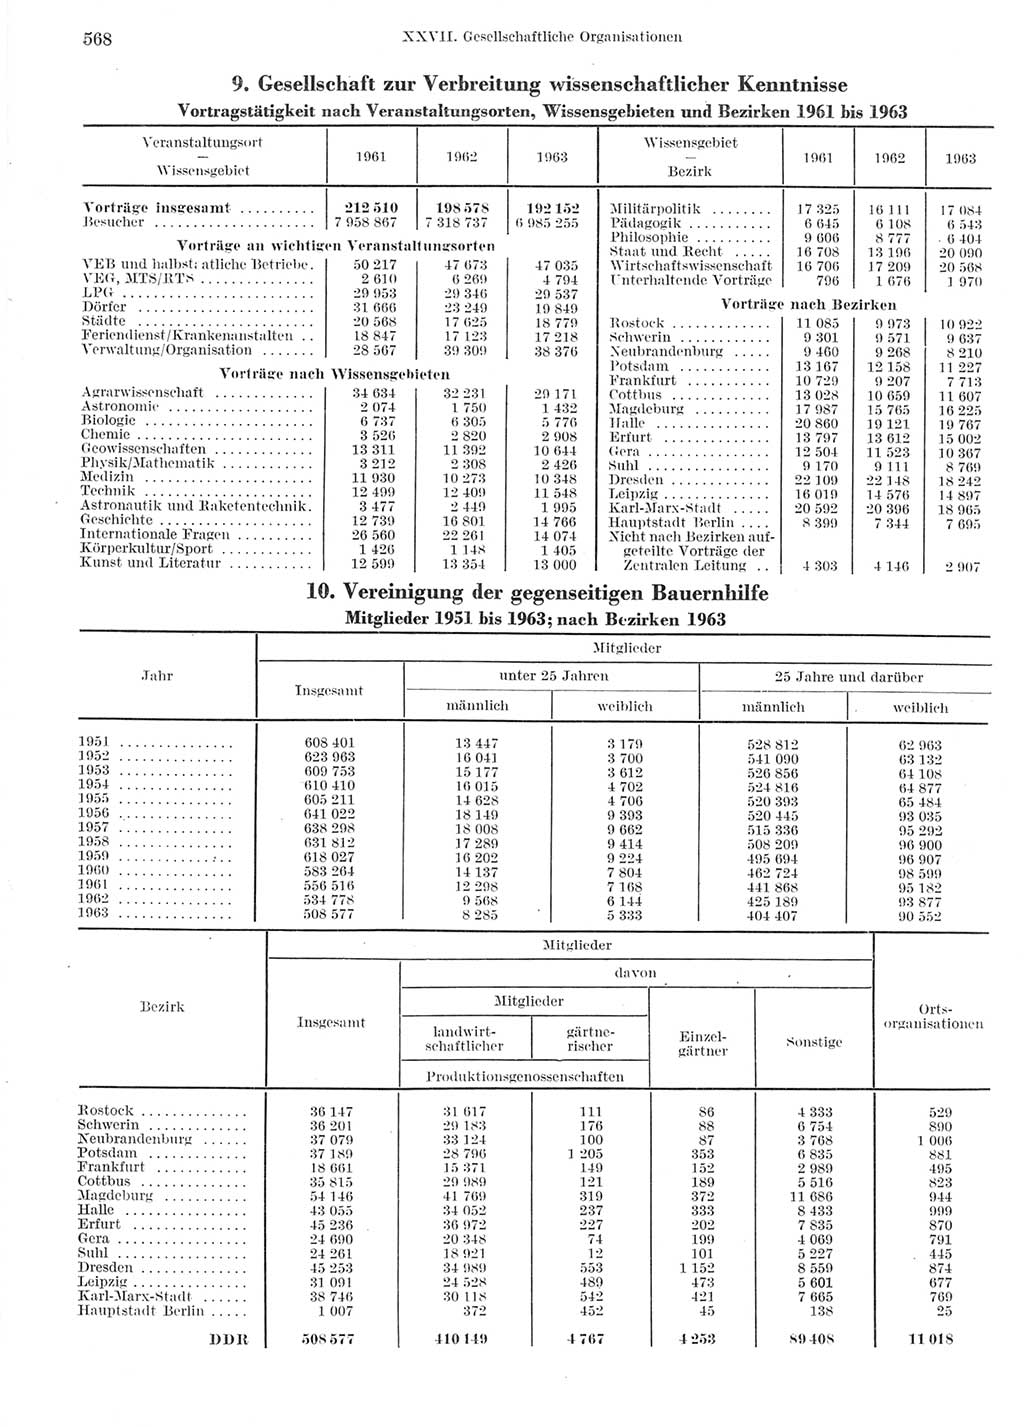 Statistisches Jahrbuch der Deutschen Demokratischen Republik (DDR) 1964, Seite 568 (Stat. Jb. DDR 1964, S. 568)